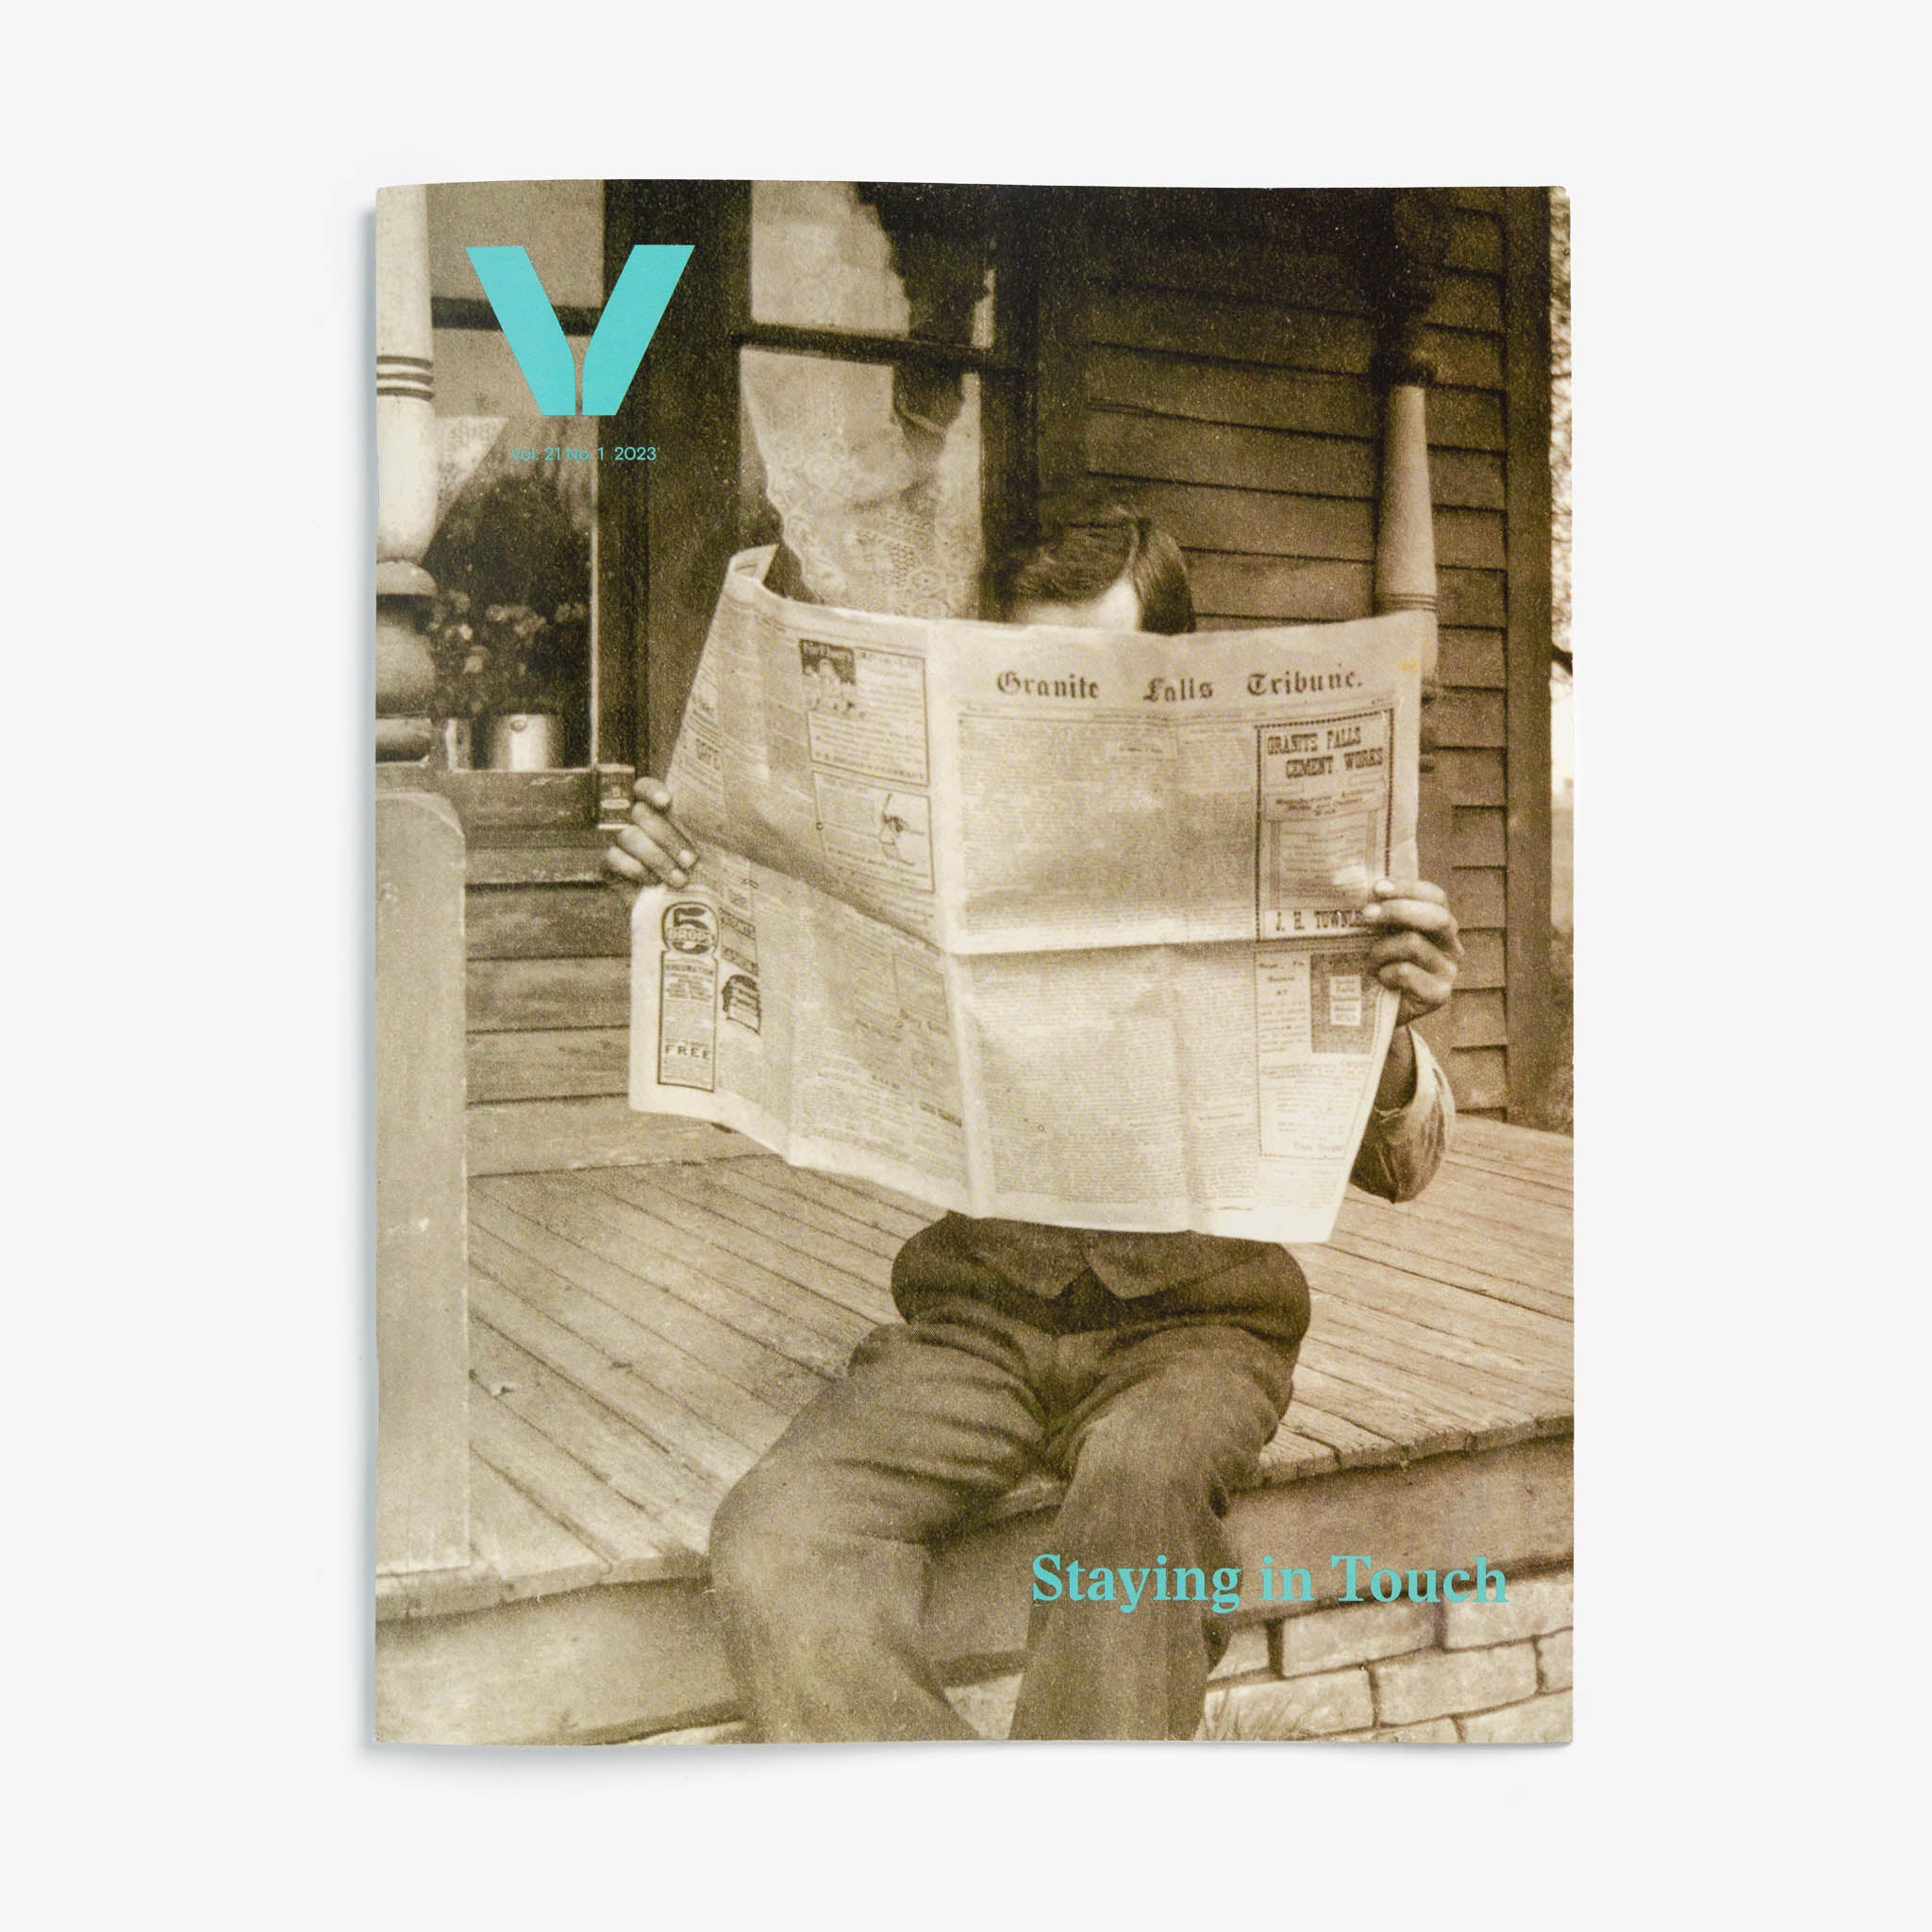 Vesterheim Magazine Vol 21 No. 1 2023 – Staying in Touch